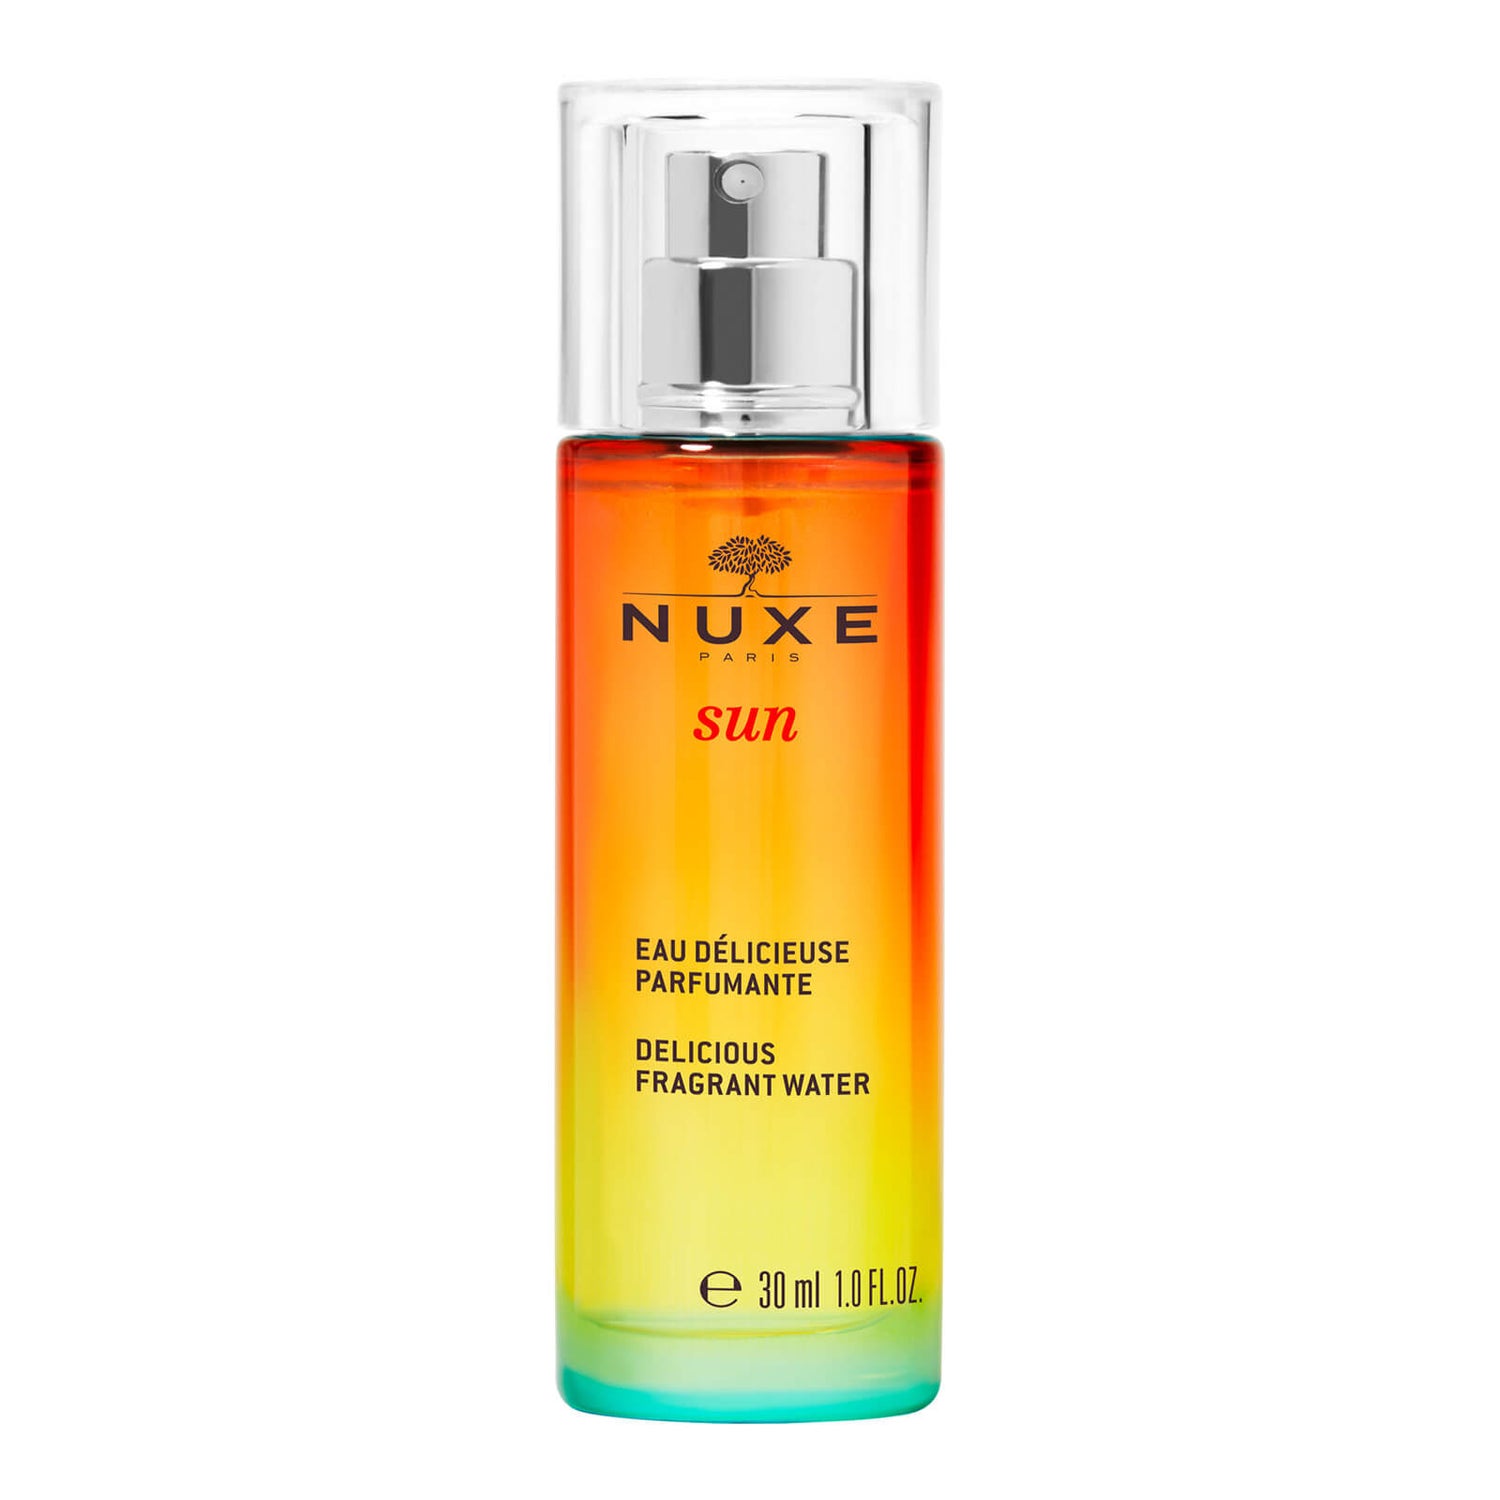 Agua deliciosa perfumada, NUXE Sun 30 ml